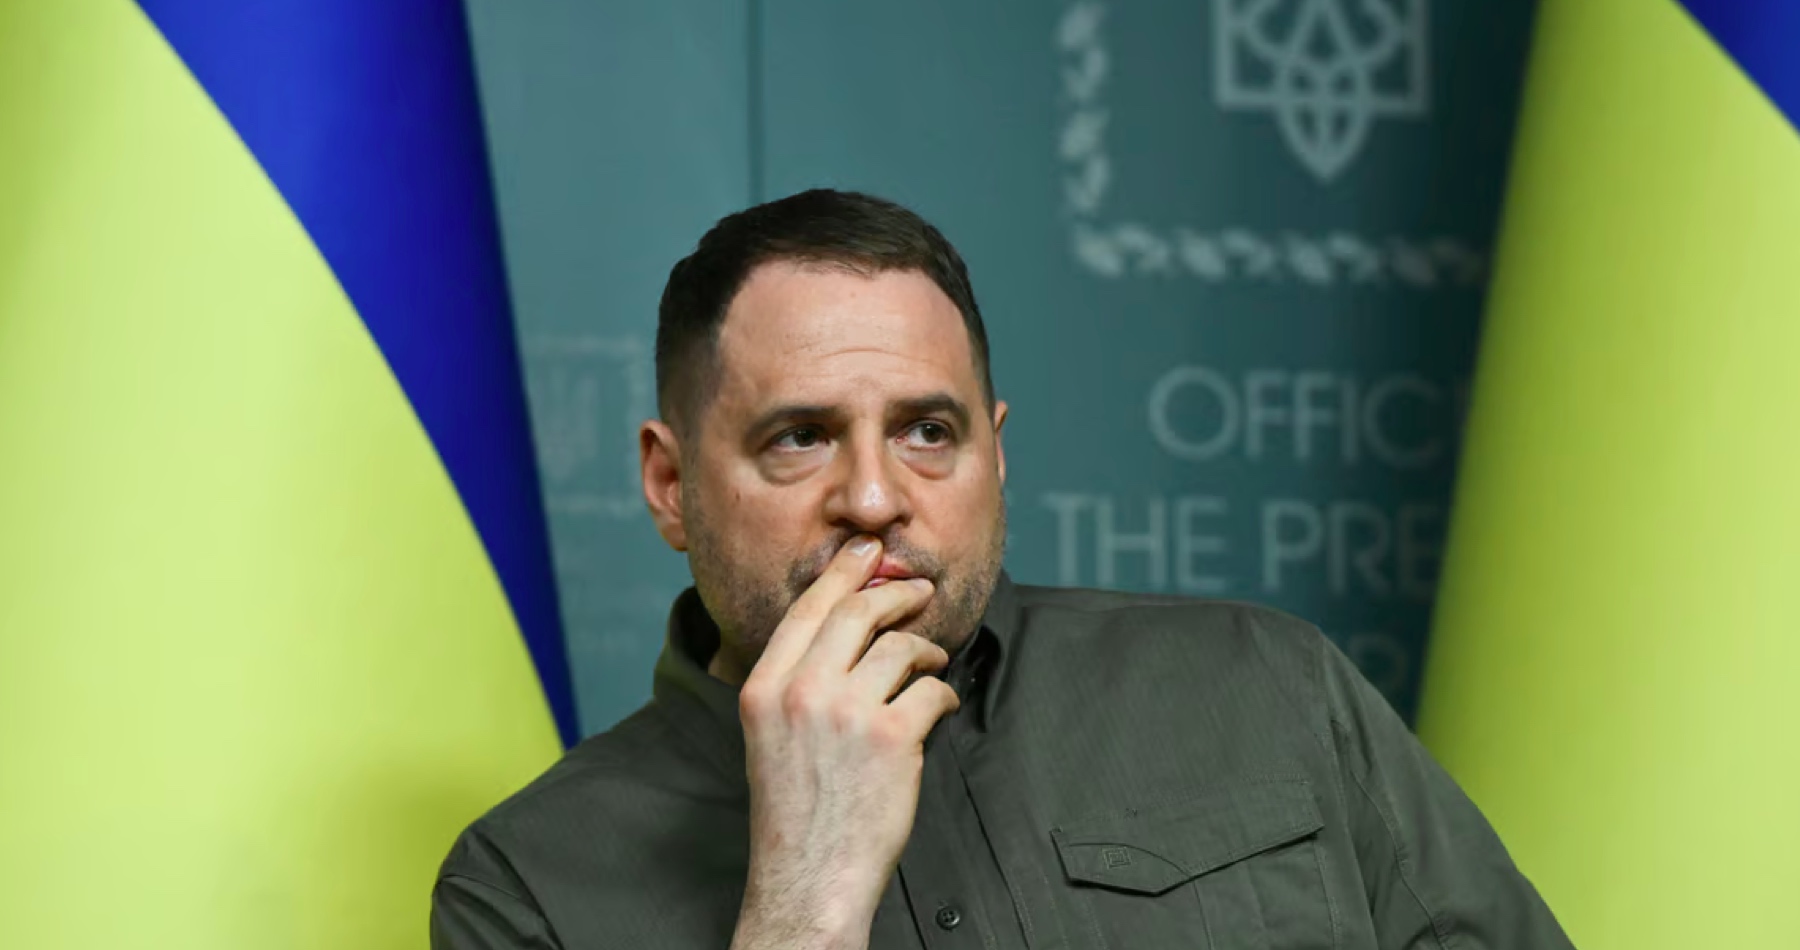 Ukrajina nie je pripravená rokovať s Ruskom o mieri, vyhlásil šéf Zelenského kancelárie pred nadchádzajúcim summitom NATO